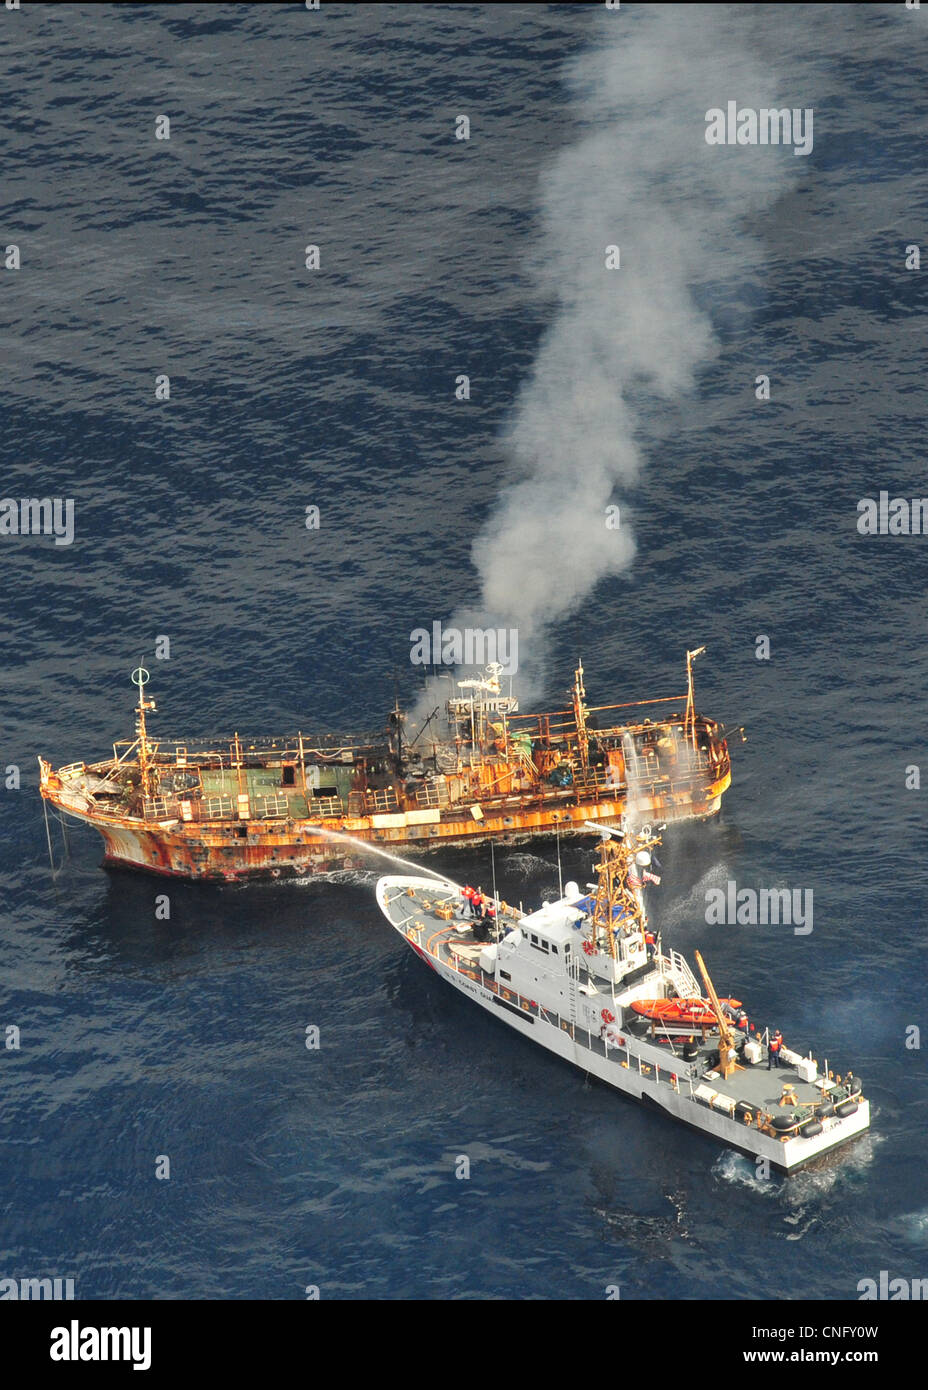 Die japanische Fischereifahrzeug Ryou-Un Maru brennt nach der US Coast Guard Cutter Anacapa (rechts) auf ihn mit explosive Munition 5. April 2012 im Golf von Alaska abgefeuert. Der Trawler, bekannt als das Geisterschiff im pazifischen Raum geschwebt hat nach ins Meer geworfen werden durch das Erdbeben der Stärke 9.0 ein Stockfoto